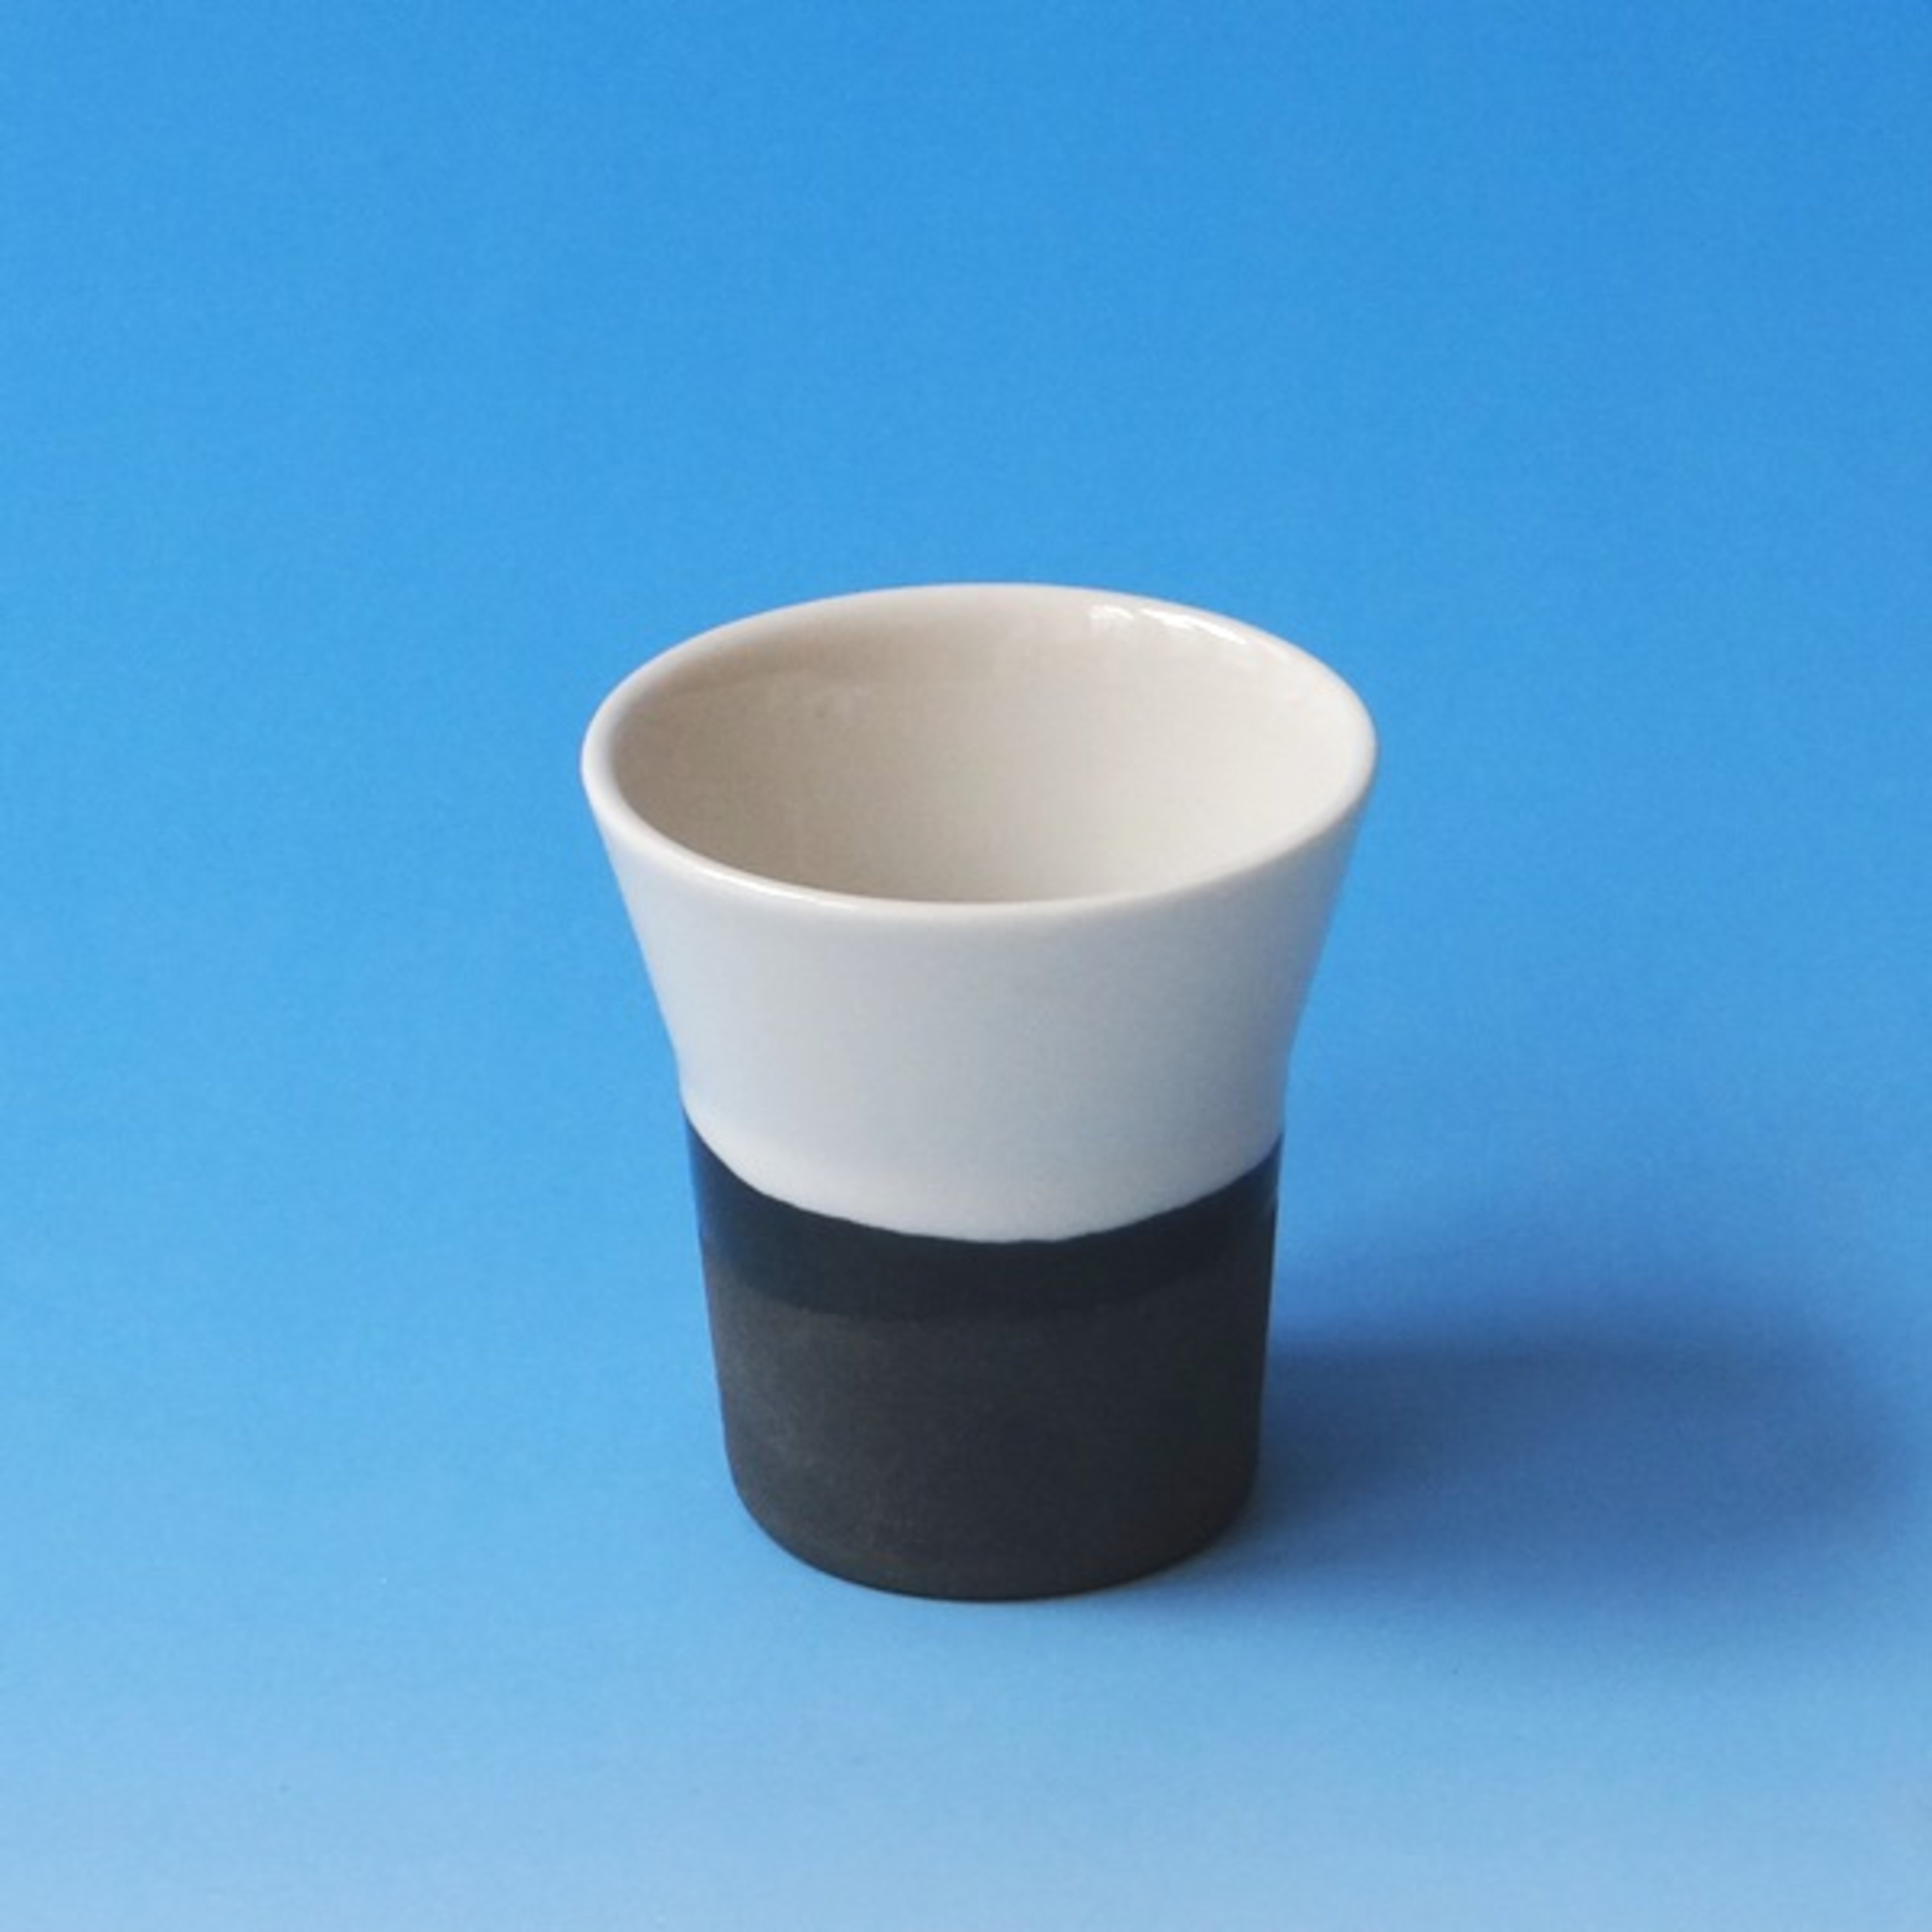 FO, Dip Espresso Cup (black), #1